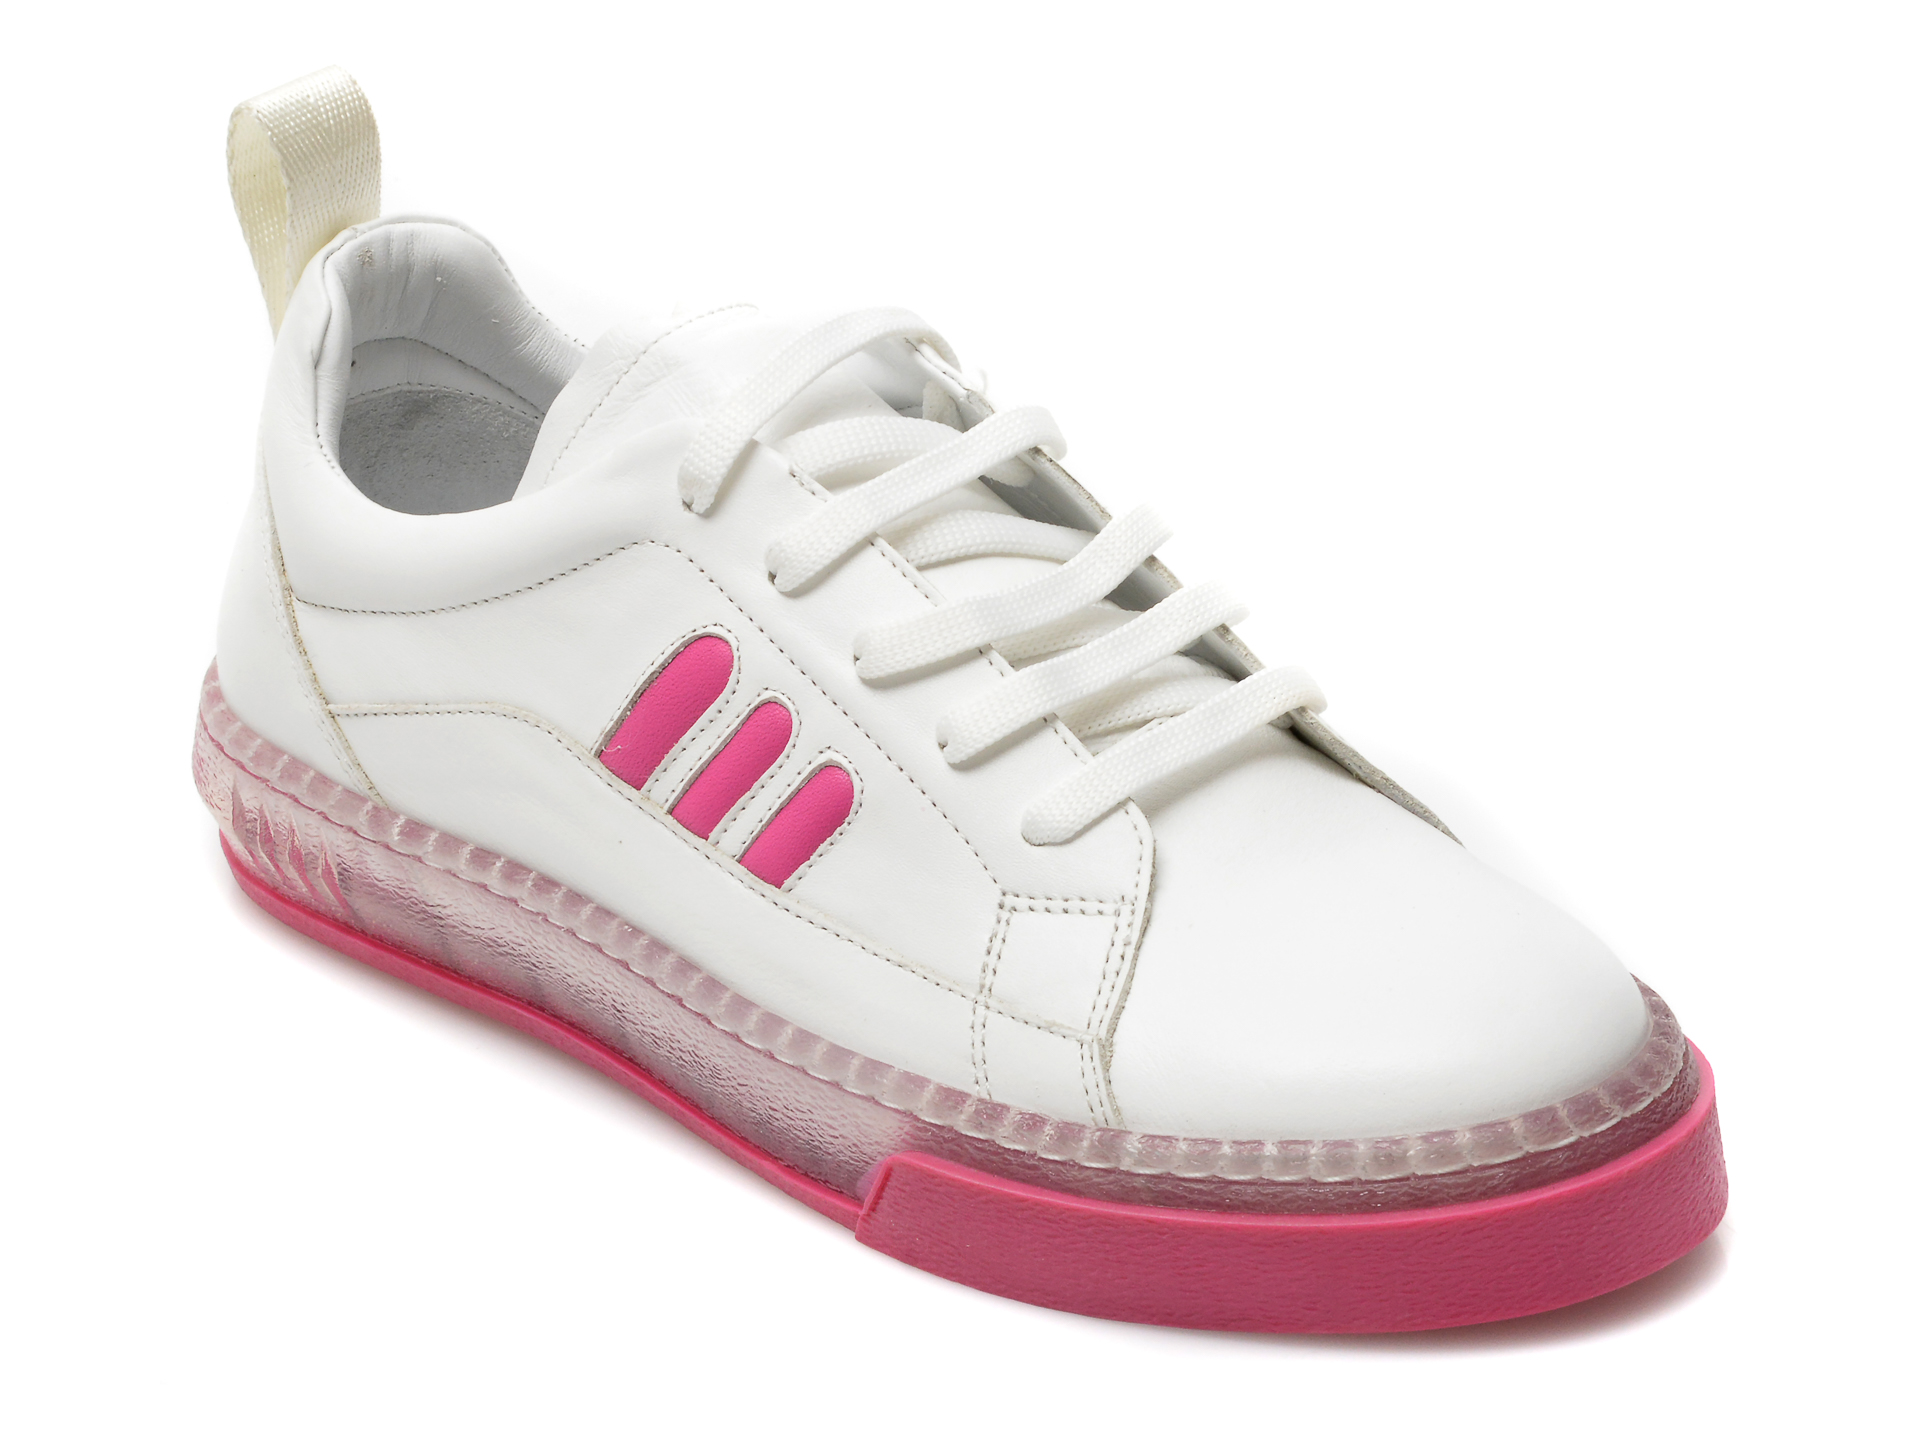 Pantofi sport ILVI albi, 164, din piele naturala /femei/pantofi